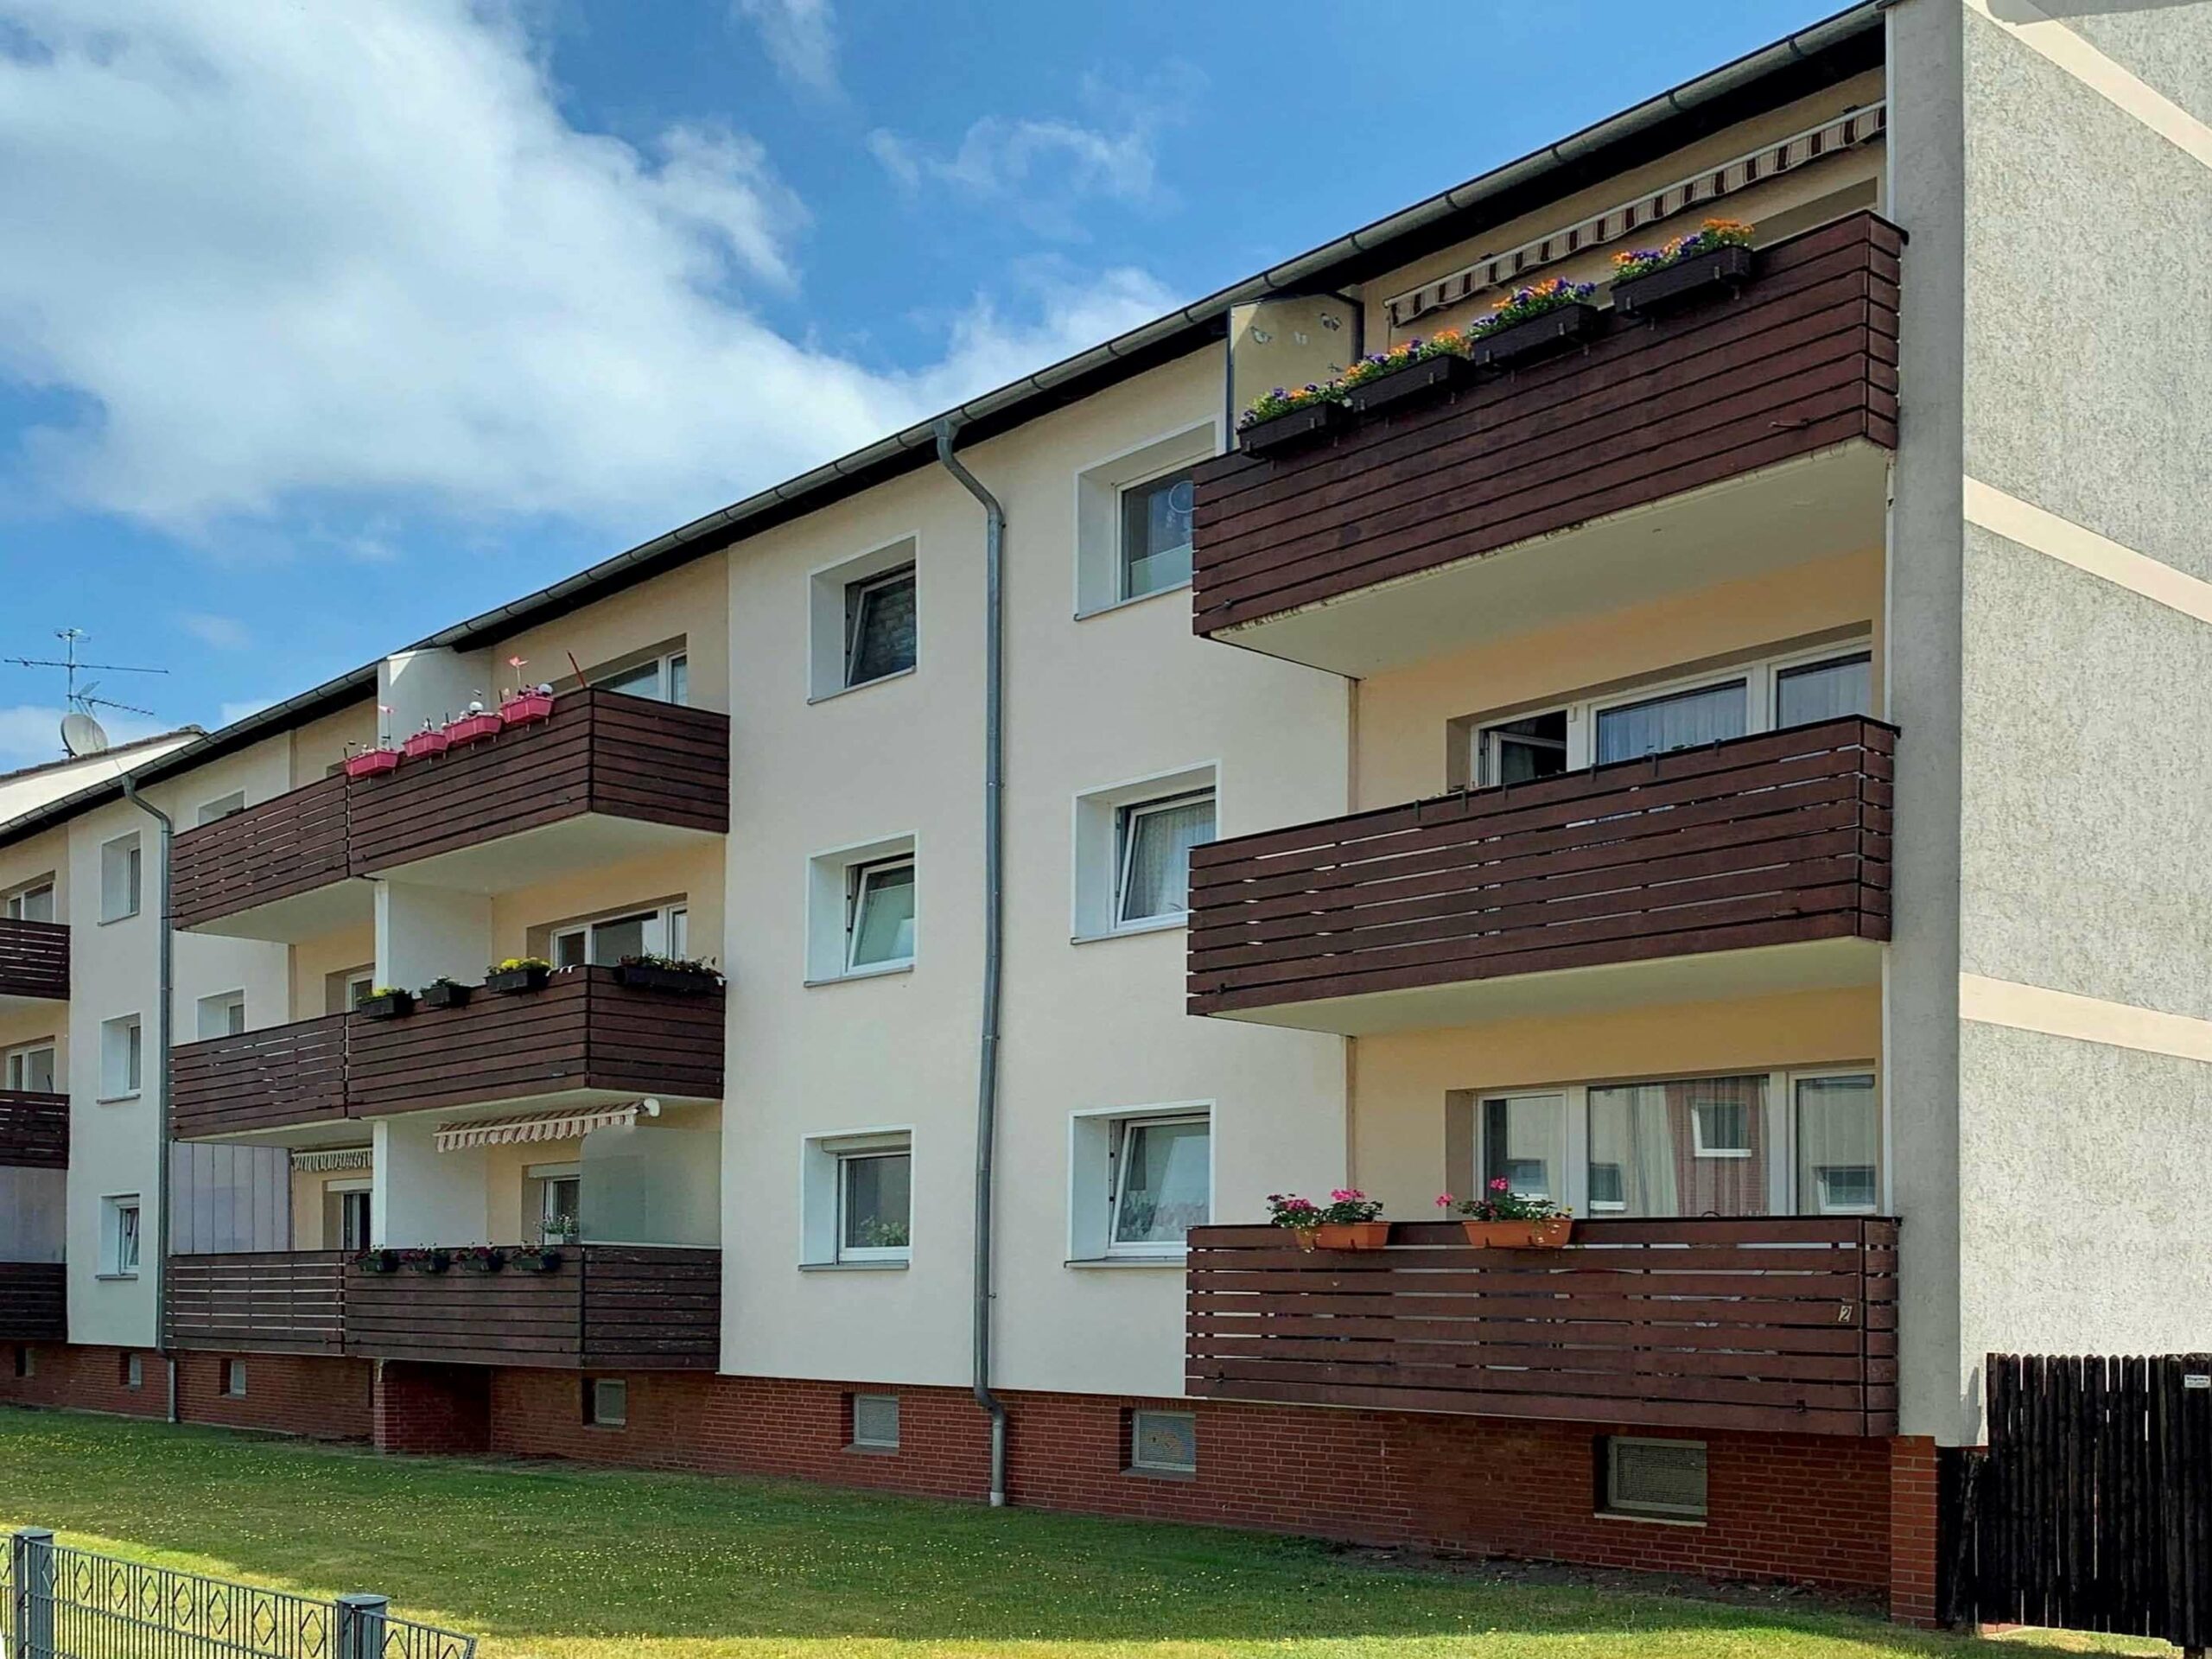 Vermietete 3-Zi.-Eigentumswohnung mit Balkon in zentraler Wohnlage von Seelze OT Lohnde, 30926 Seelze, Etagenwohnung